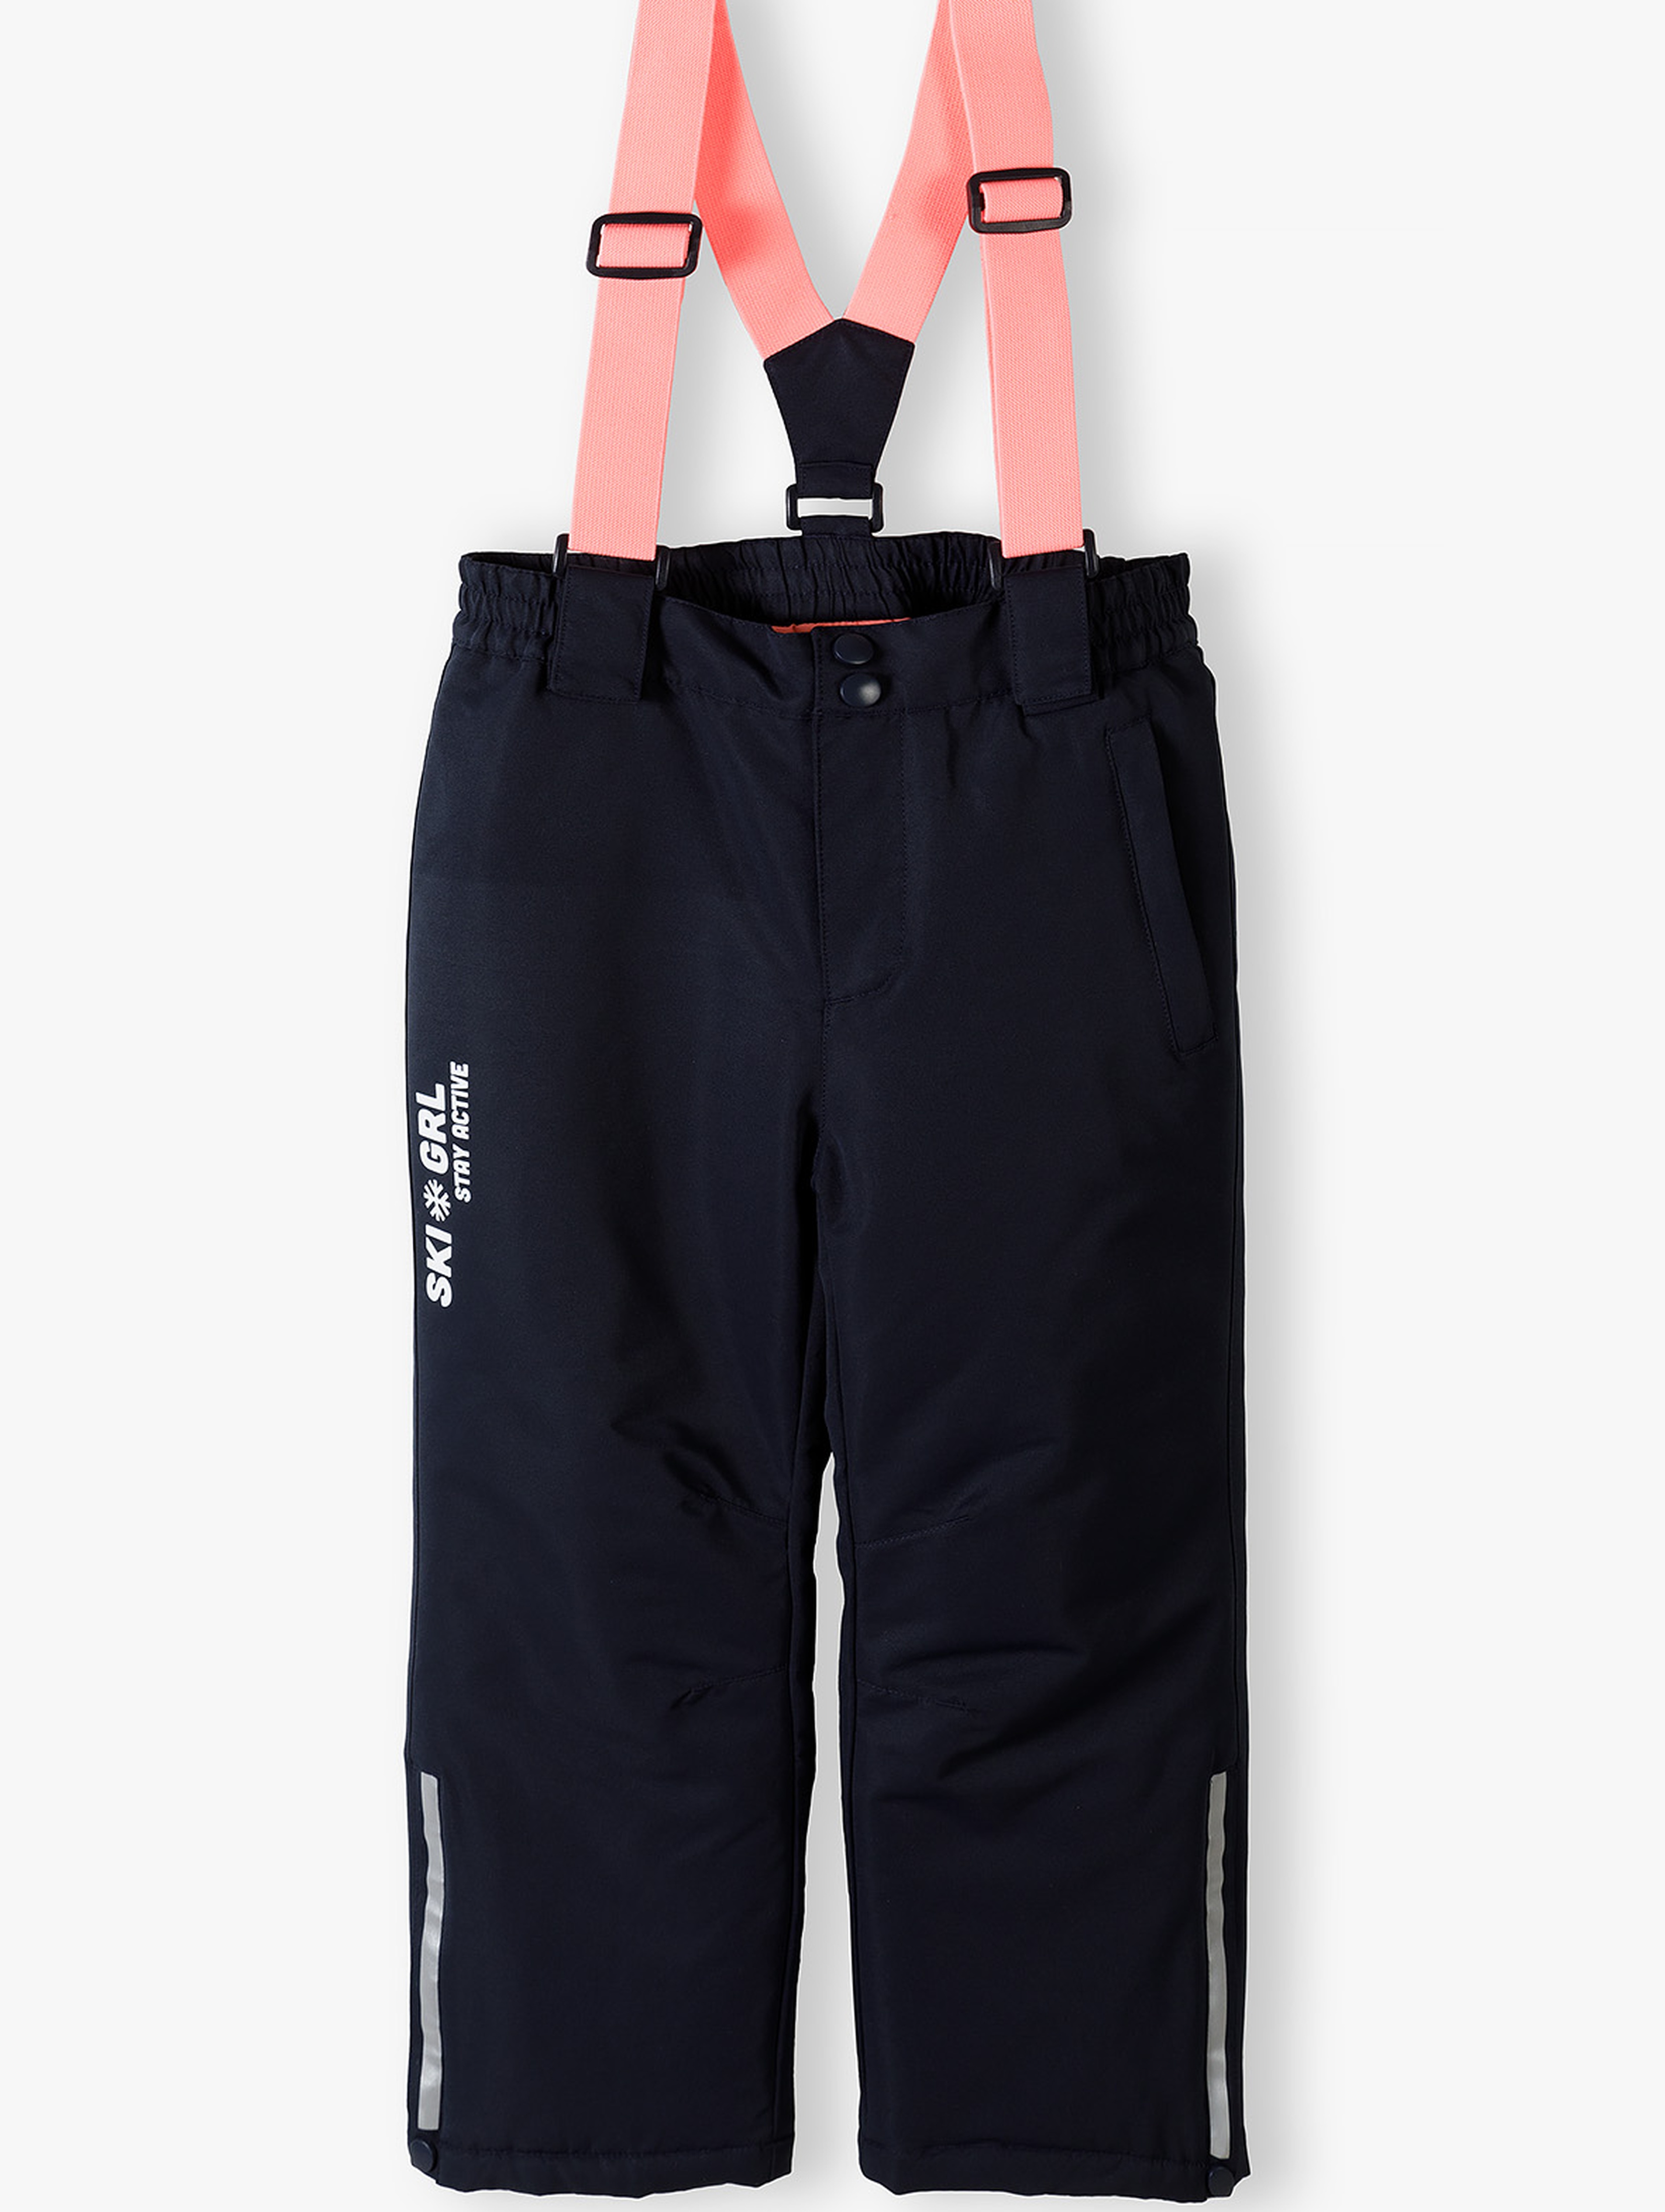 Granatowe spodnie narciarskie dla dziewczynki z elementami odblaskowymi i szelkami